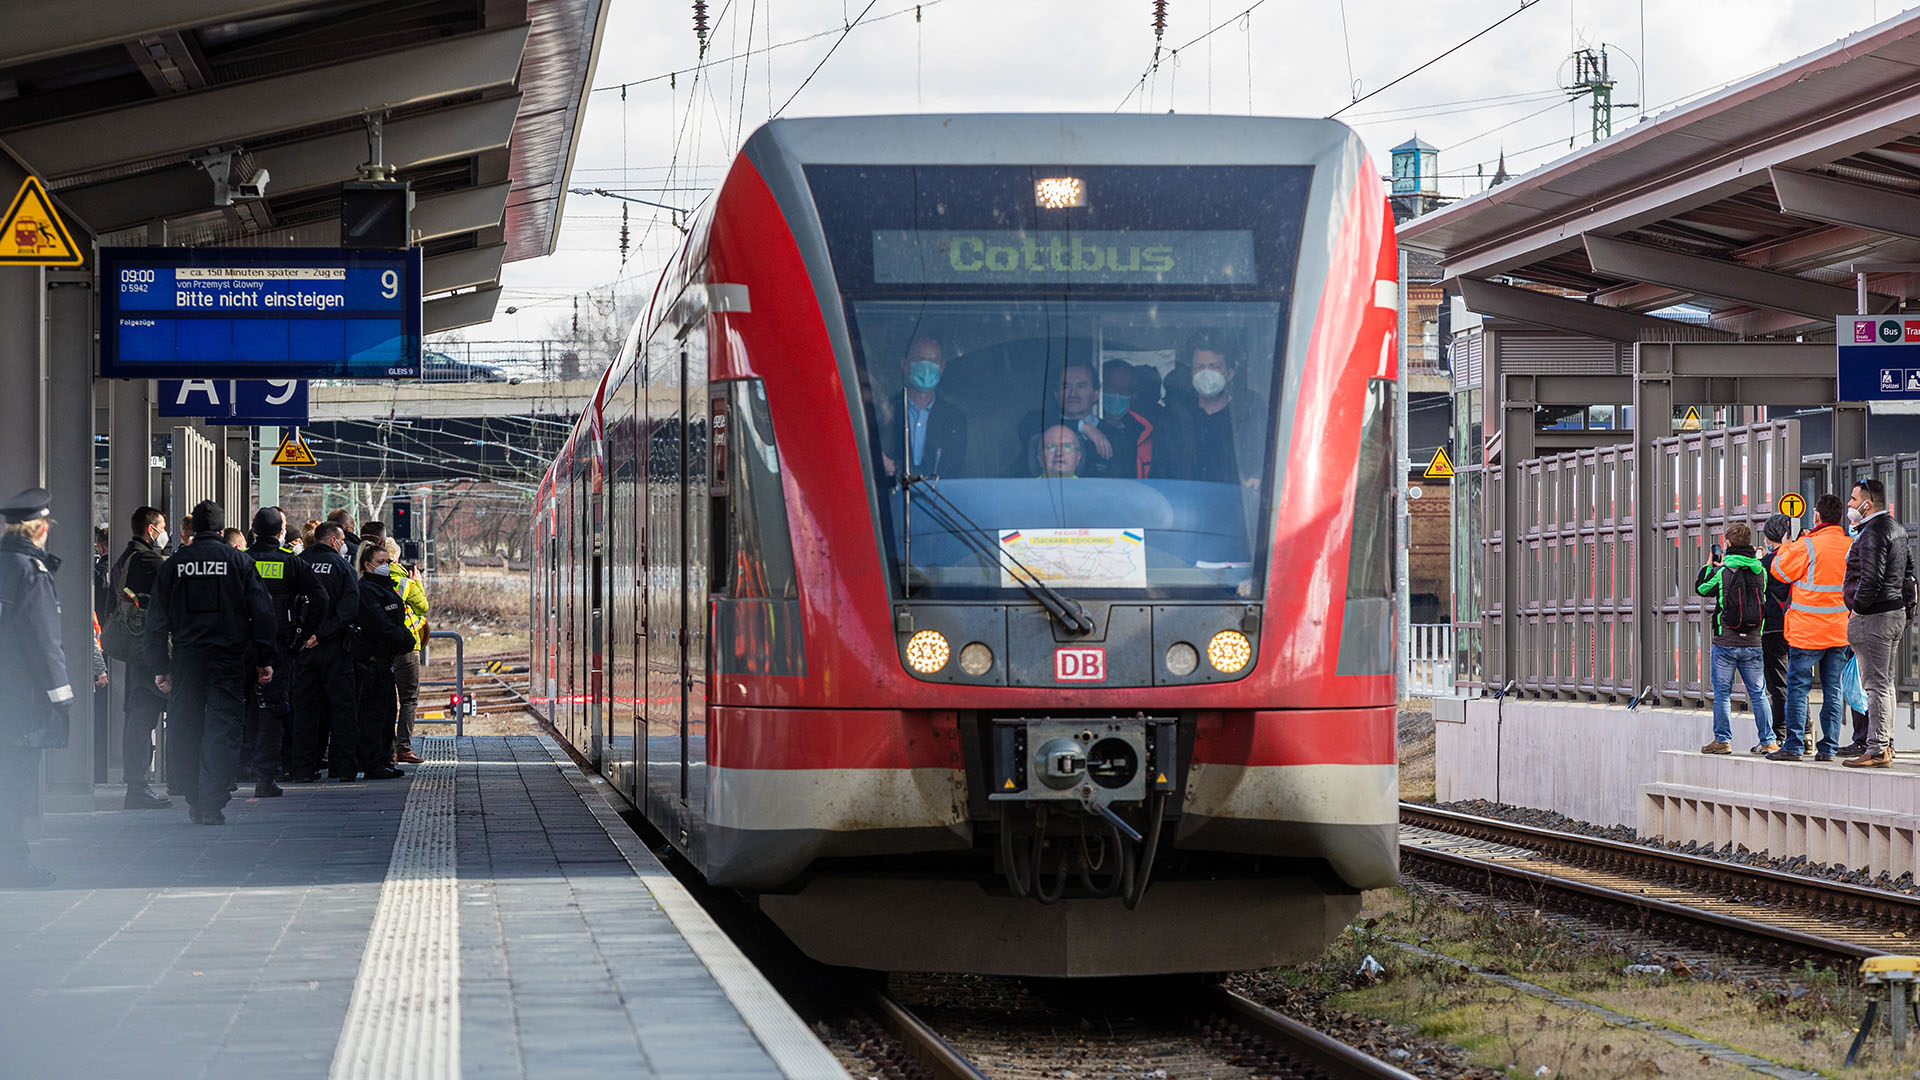 Ein Zug kommt am Hauptbahnhof in Cottbus an. (Quelle: dpa/Frank Hammerschmidt)